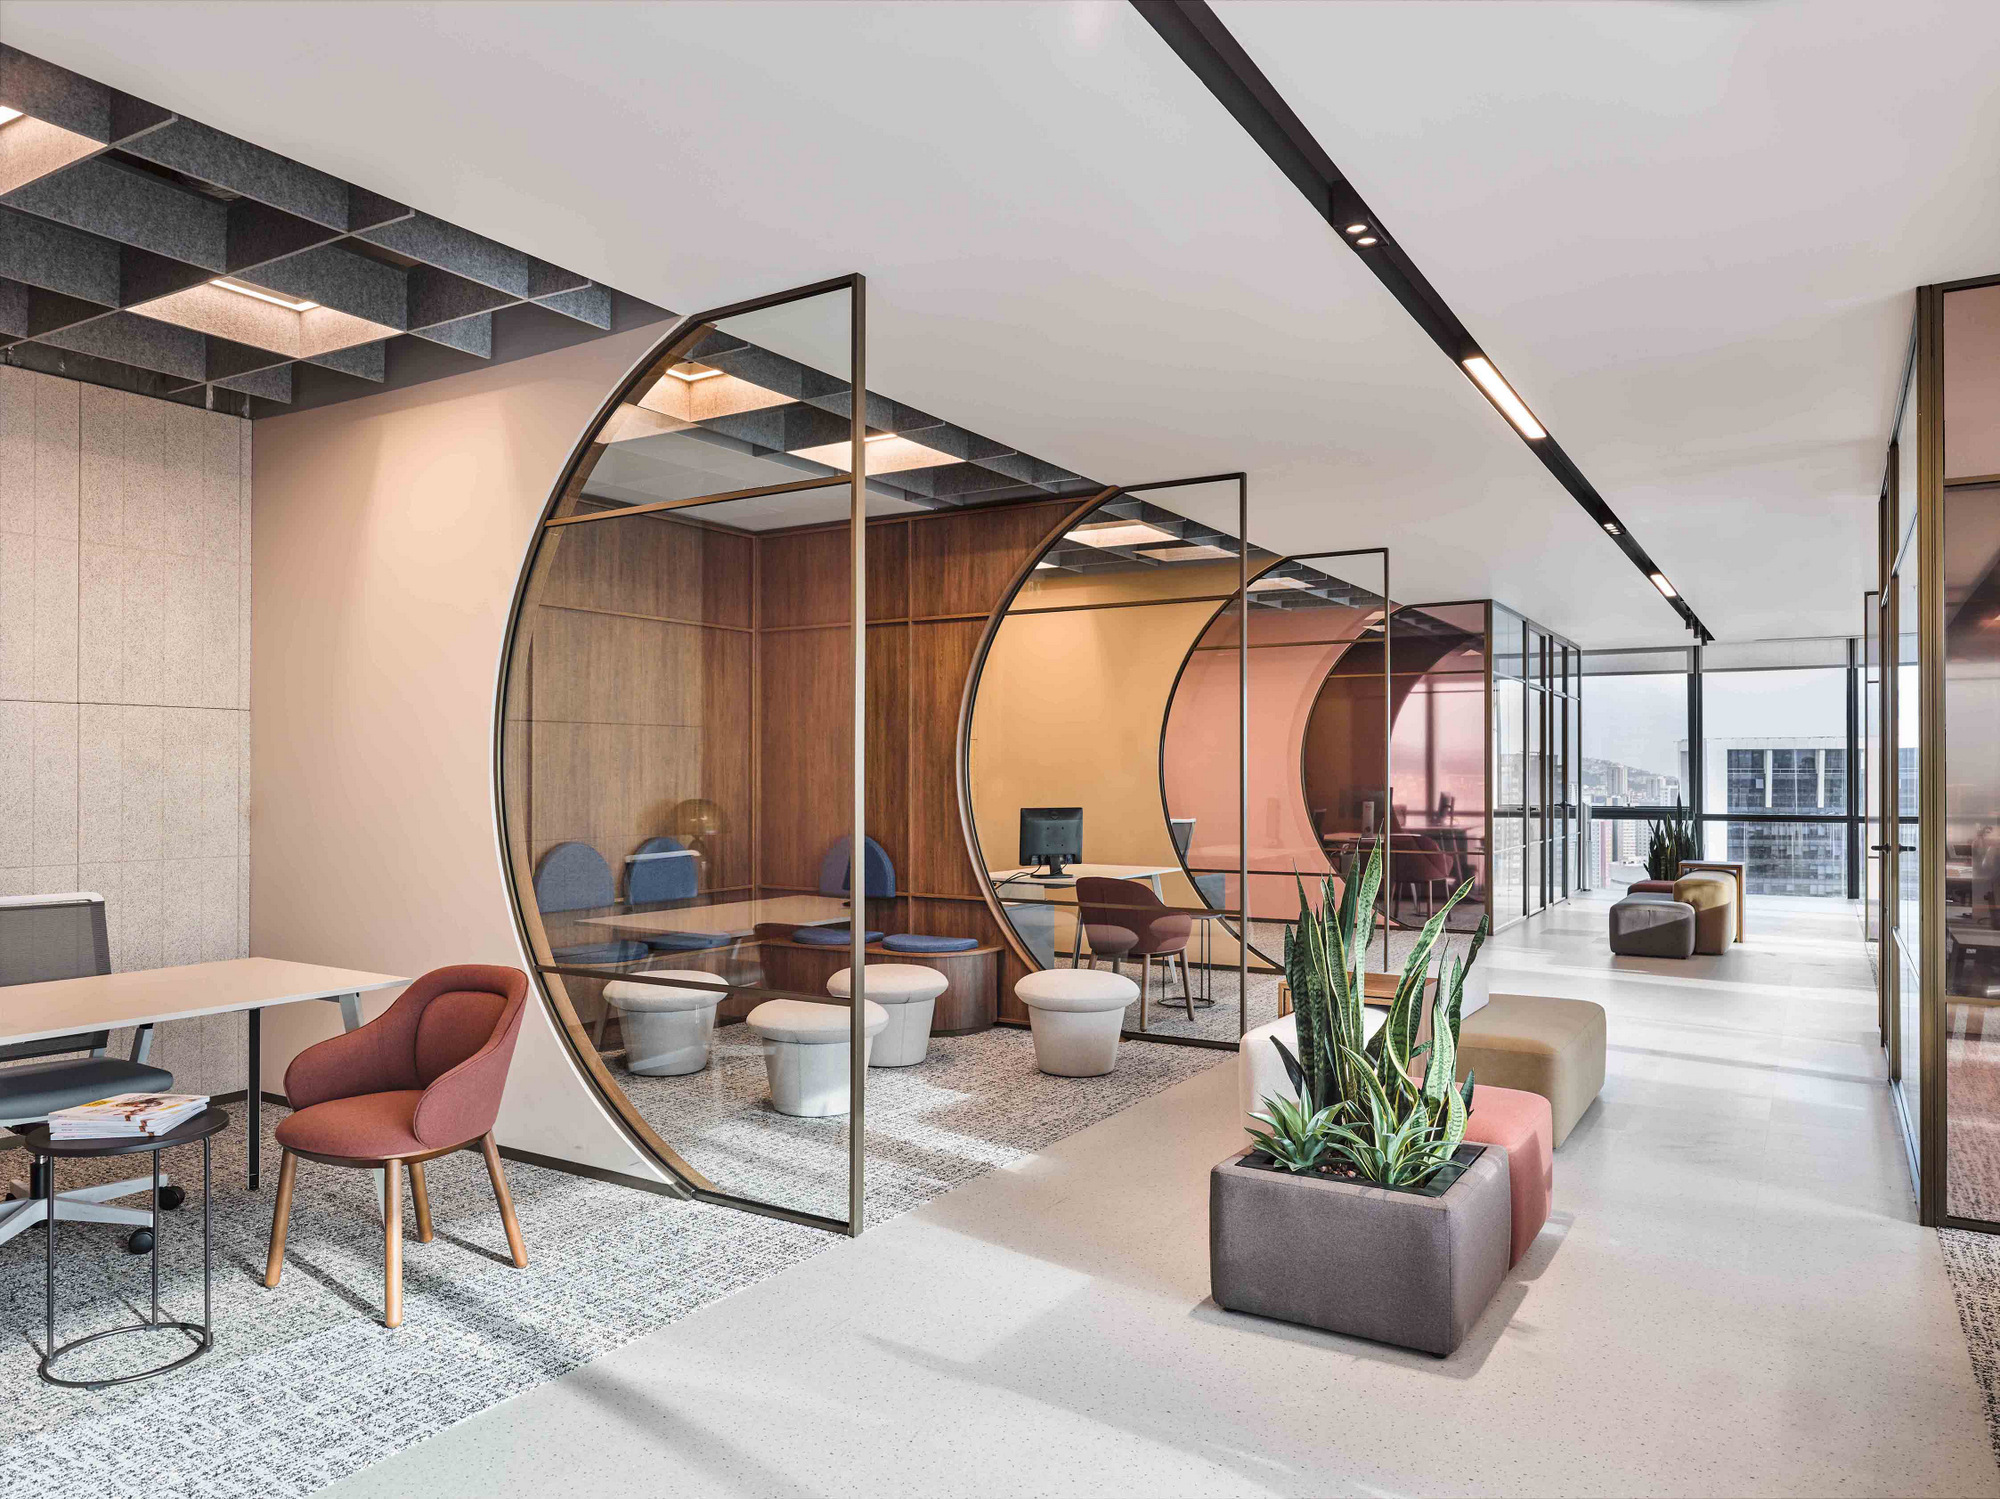 图片[6]|Barry Callebaut办公室；巧克力学院-伊斯坦布尔|ART-Arrakis | 建筑室内设计的创新与灵感